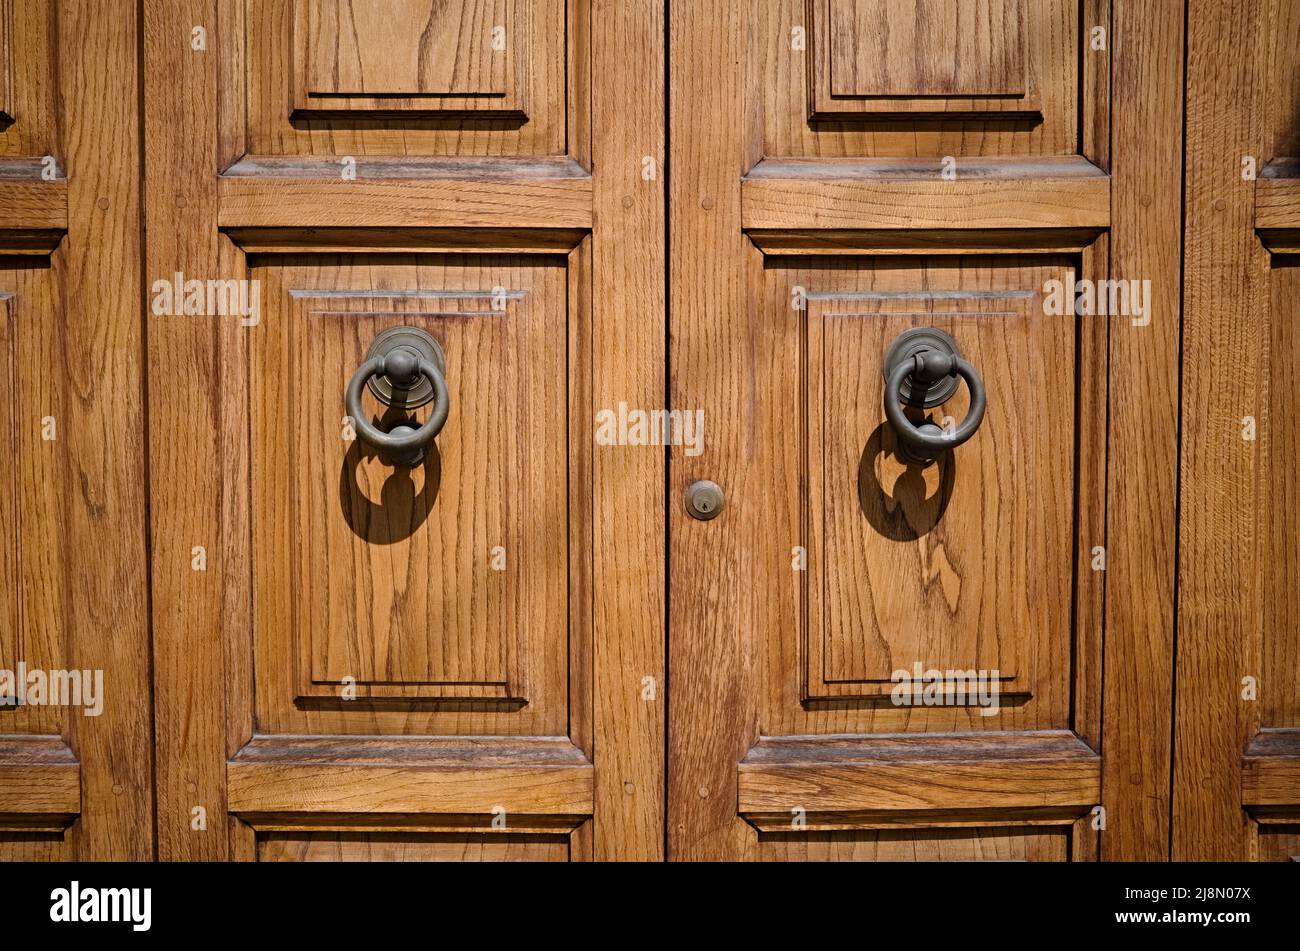 Grandes portes d'entrée en bois avec poignées rondes en métal et petit trou de serrure. Portes doubles en bois massif de couleur bois naturel Banque D'Images